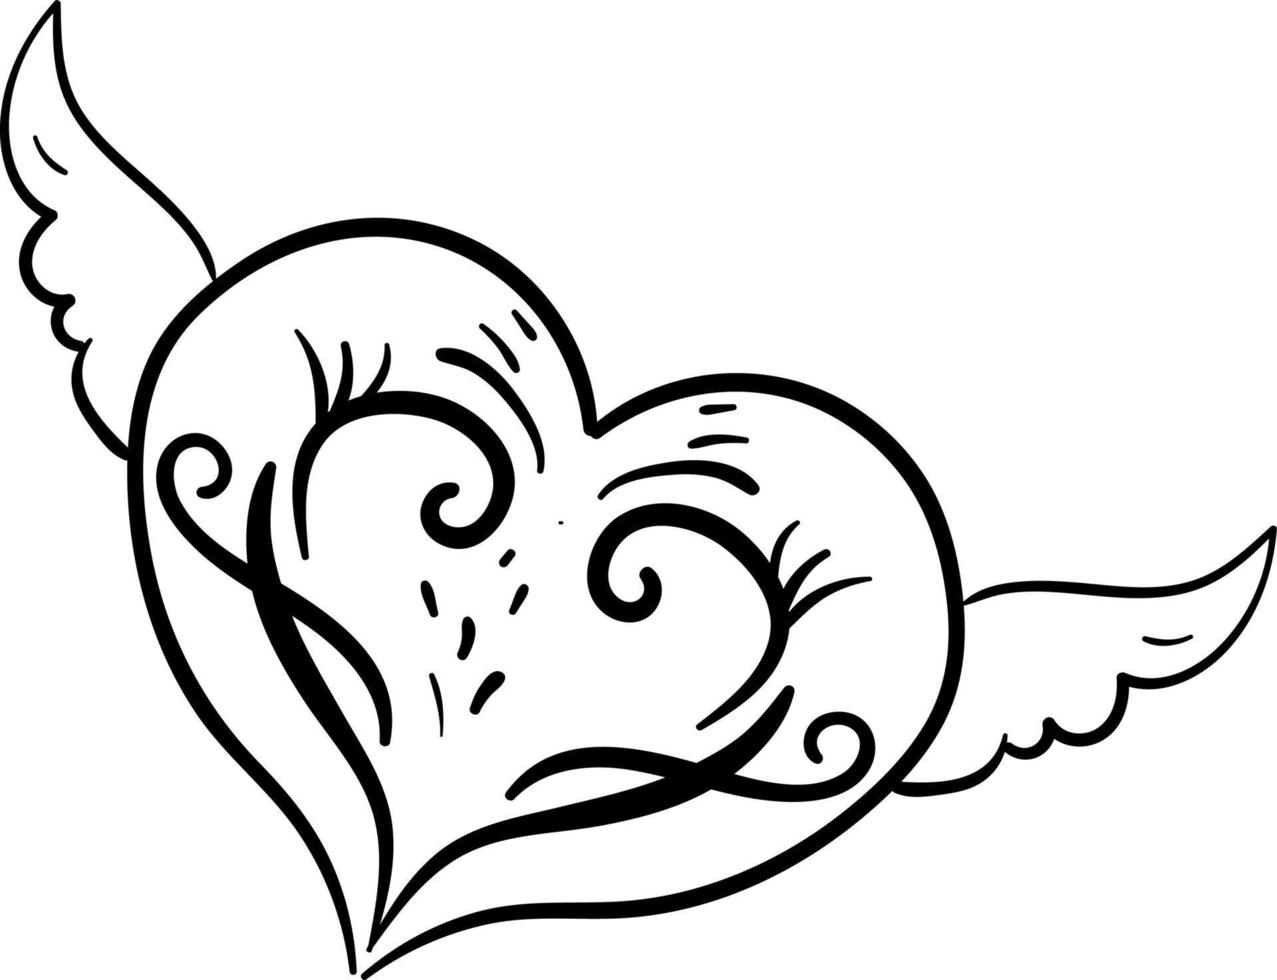 Ailes de tatouage coeur, illustration, vecteur sur fond blanc.